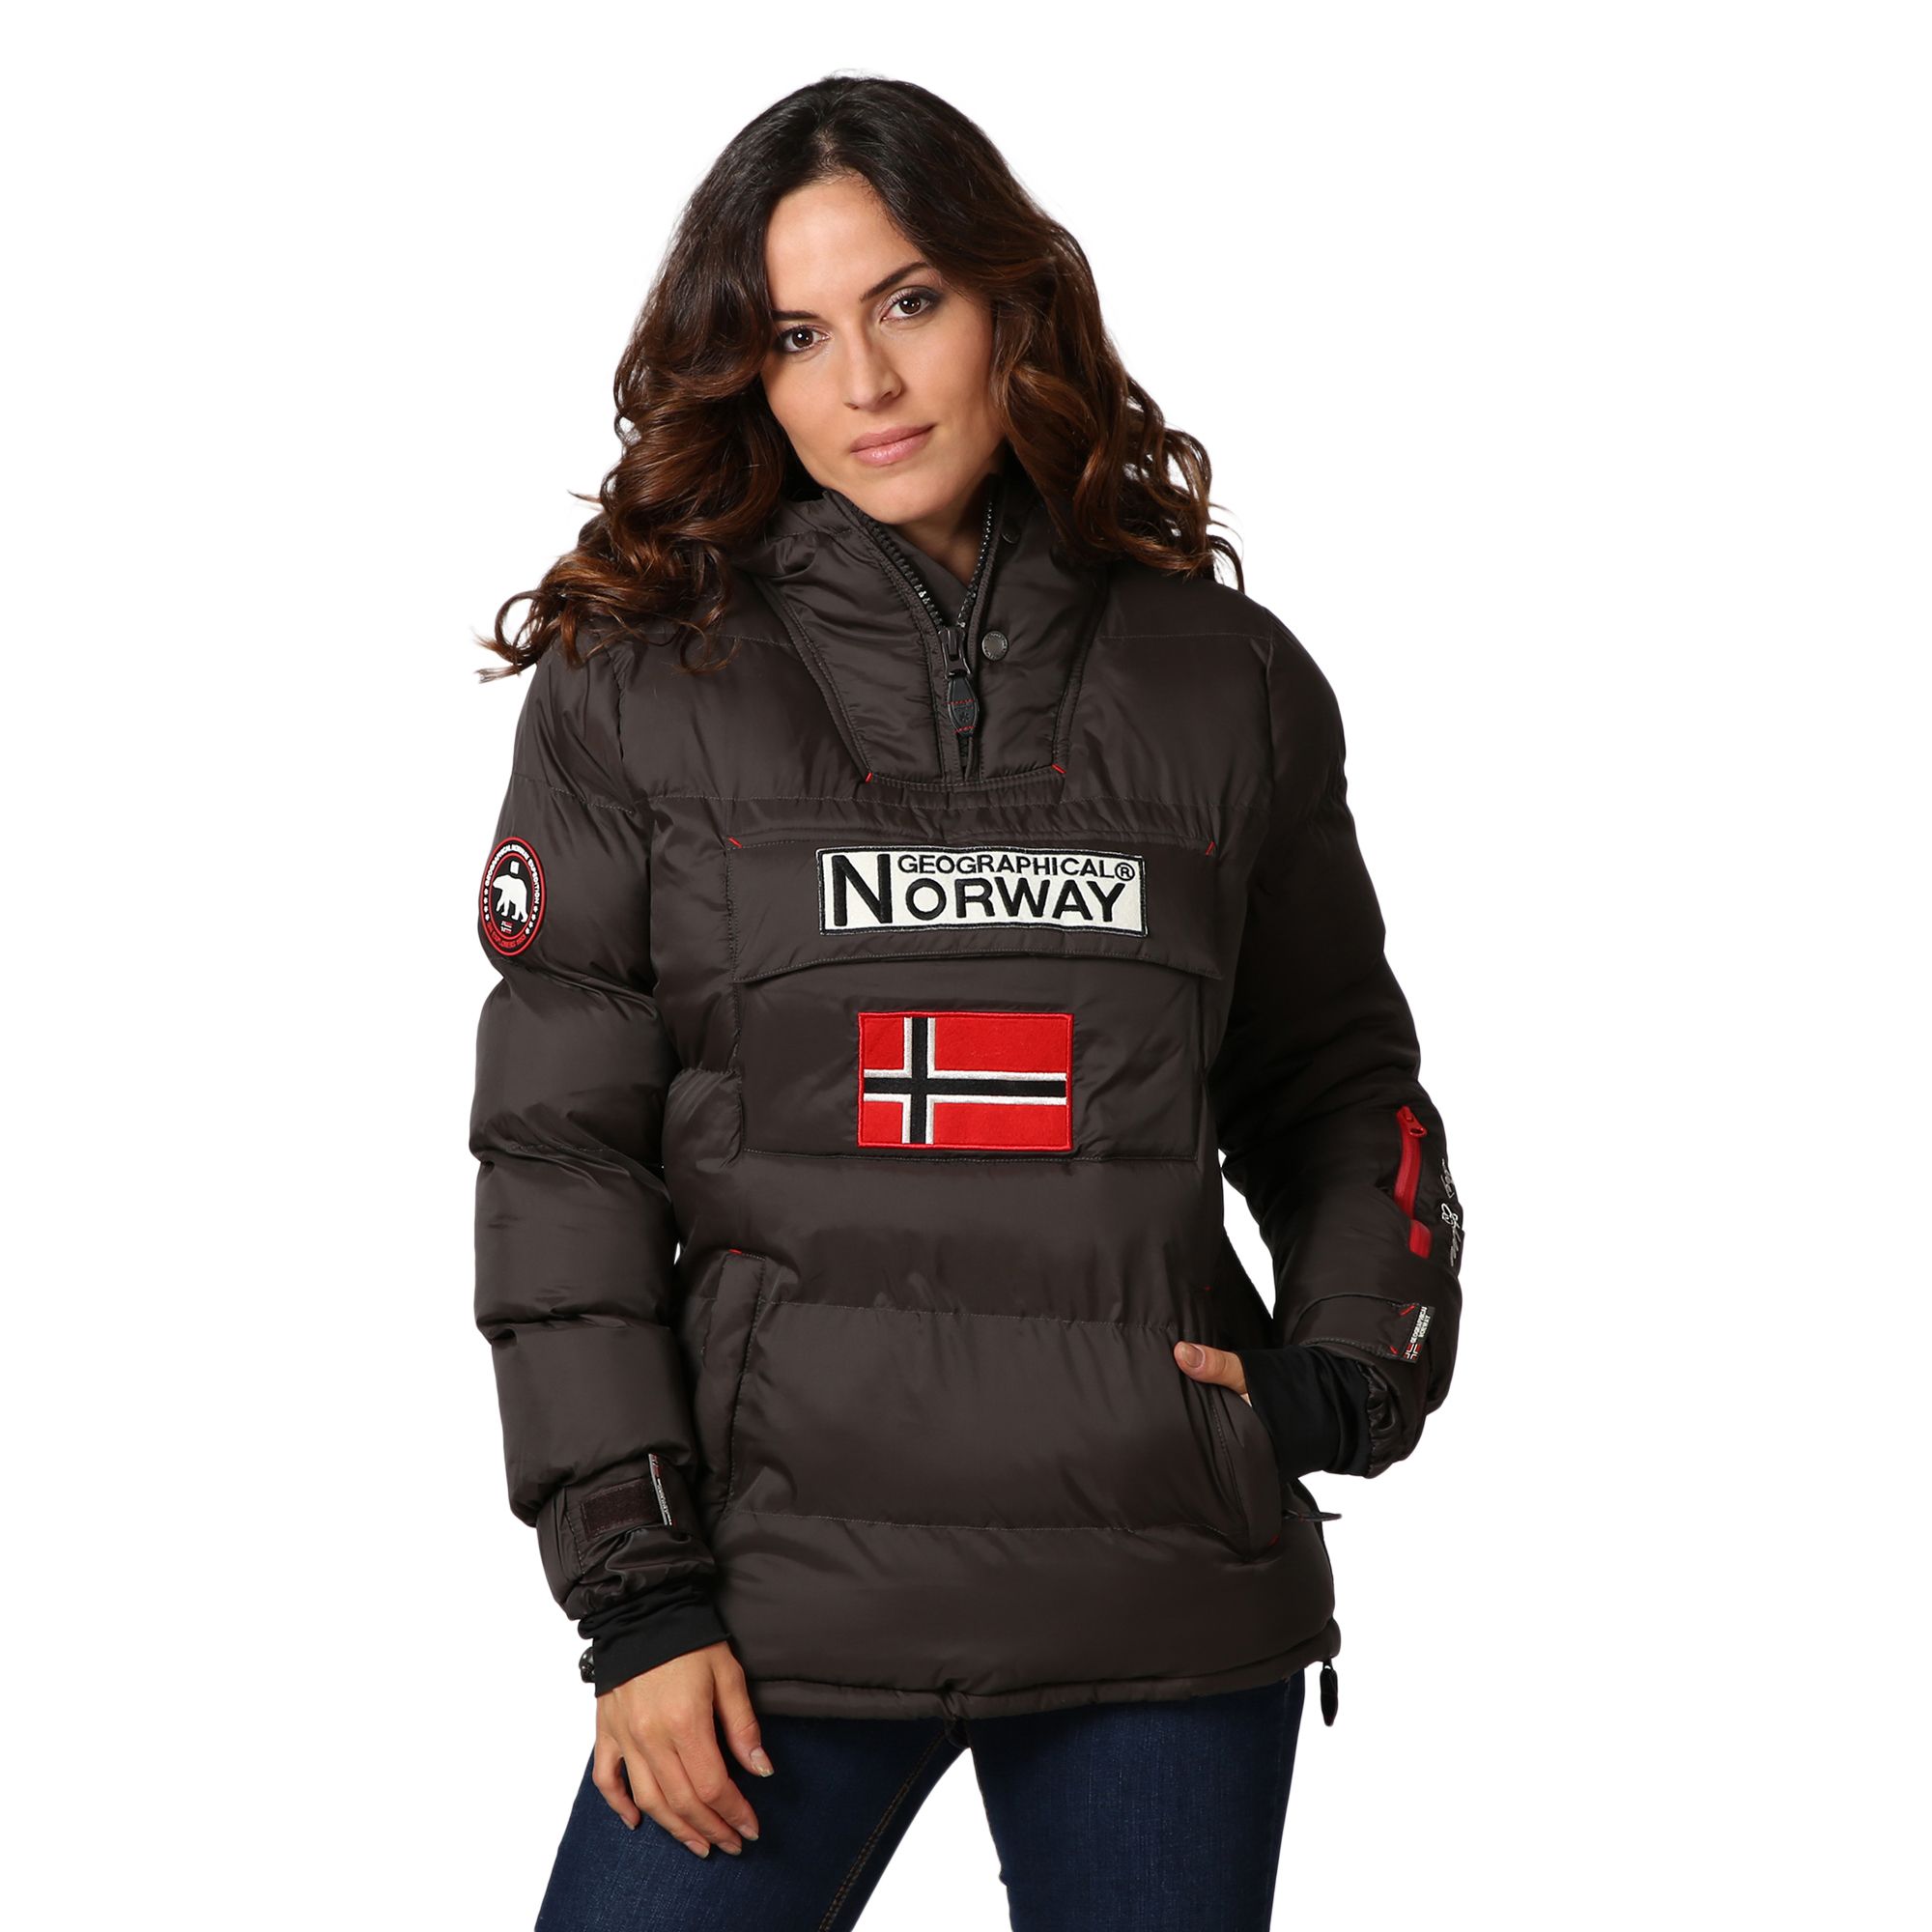 تويتر \ Privalia parte de Veepee على تويتر: "¡Las chaquetas Geographical Norway son son tendencia este invierno! Podéis encontrar la vuestra Privalia ▷ https://t.co/8cHFtOqmC9 https://t.co/do9BgNAqBi"